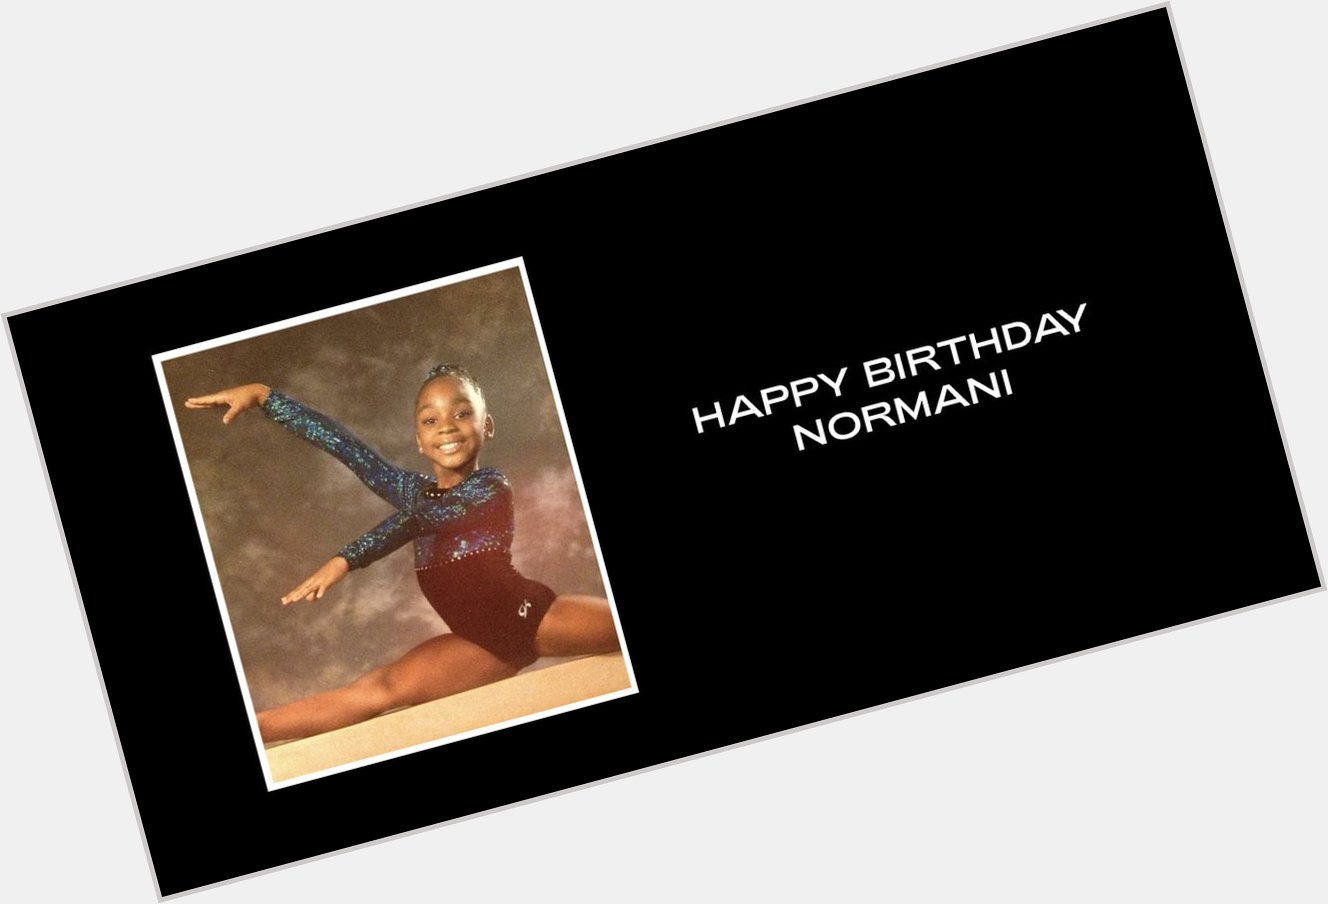  Happy Birthday Normani & Waka Flocka Flame  